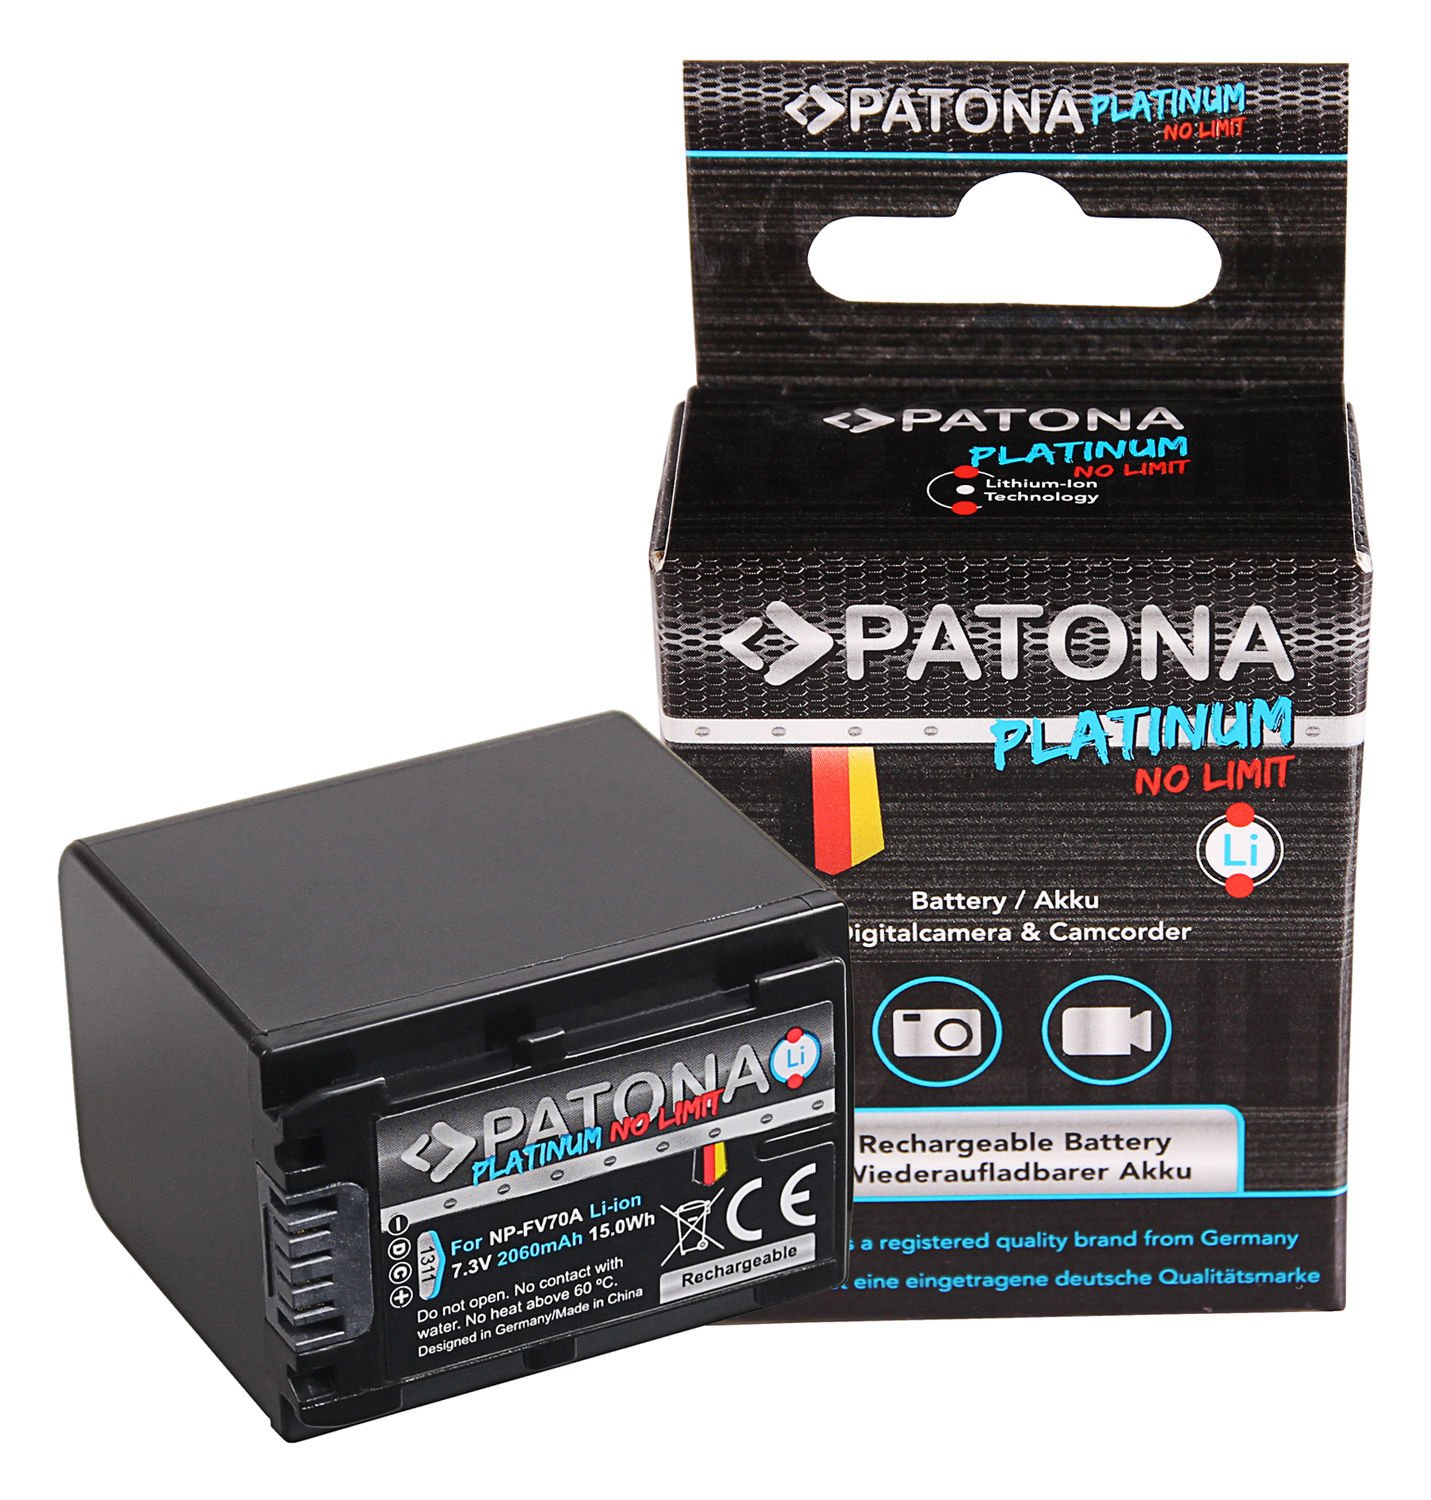 Patona Platinum Sony NP-FV70A Batarya Pil